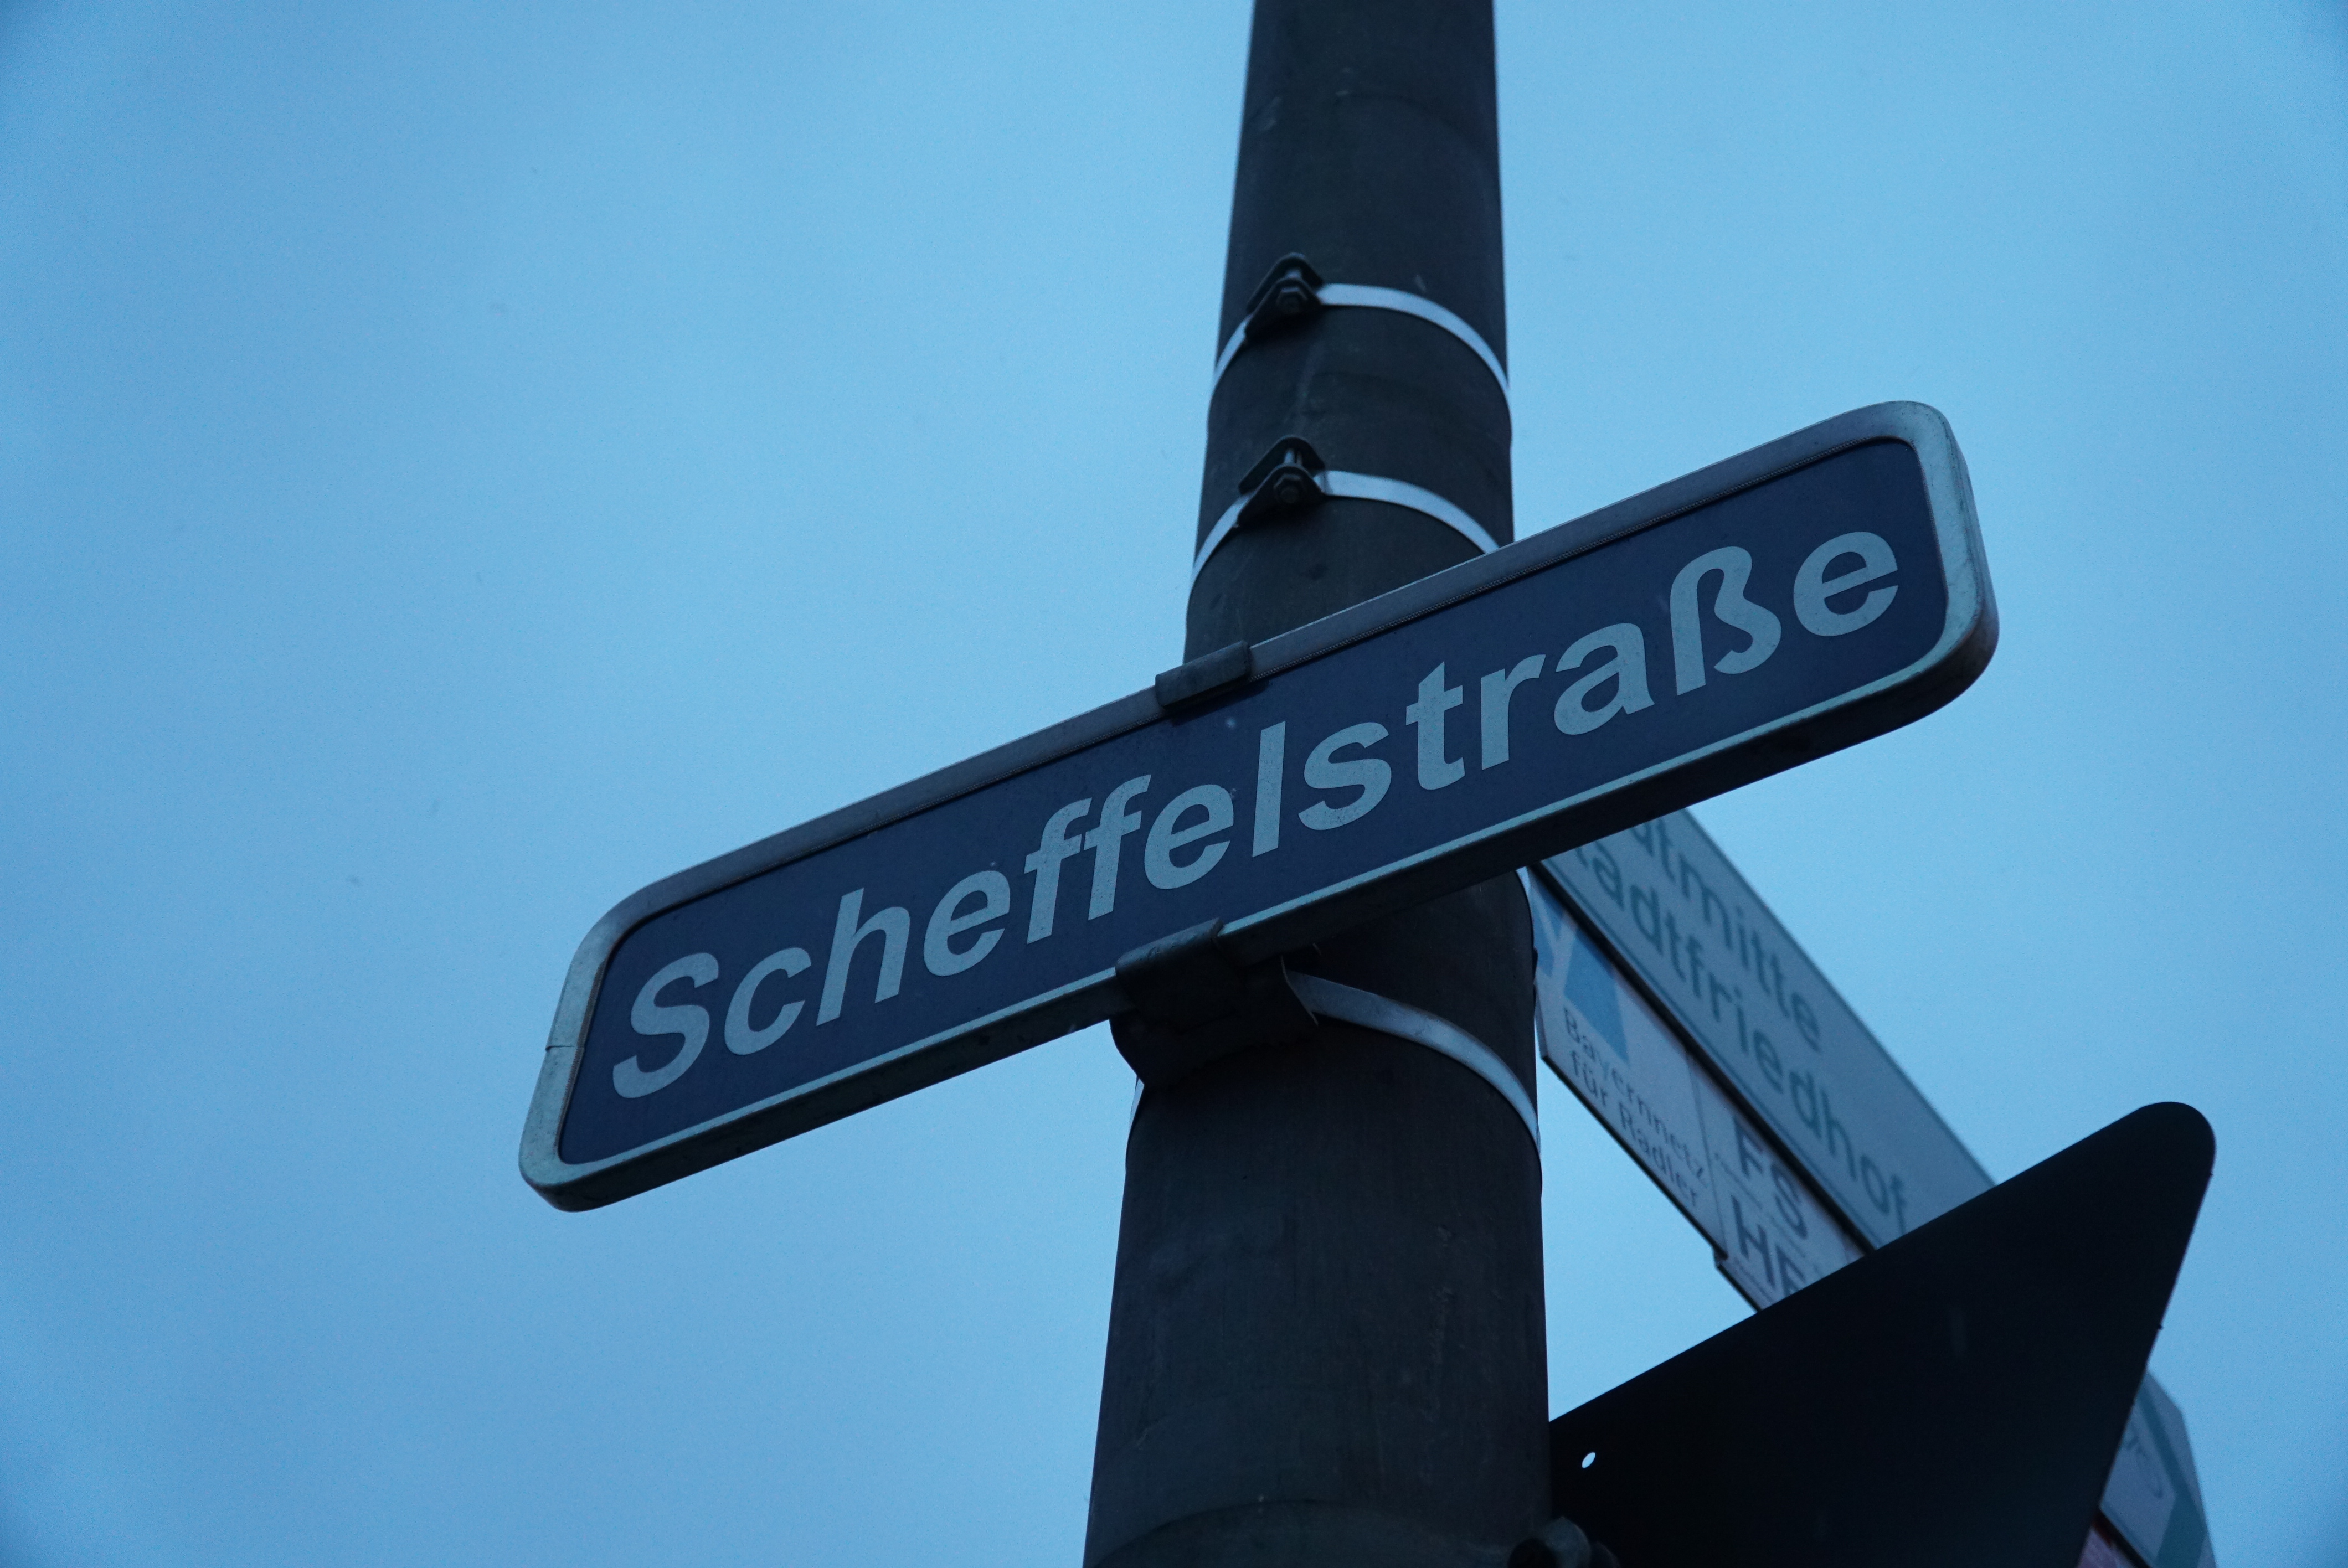 Scheffelstraße